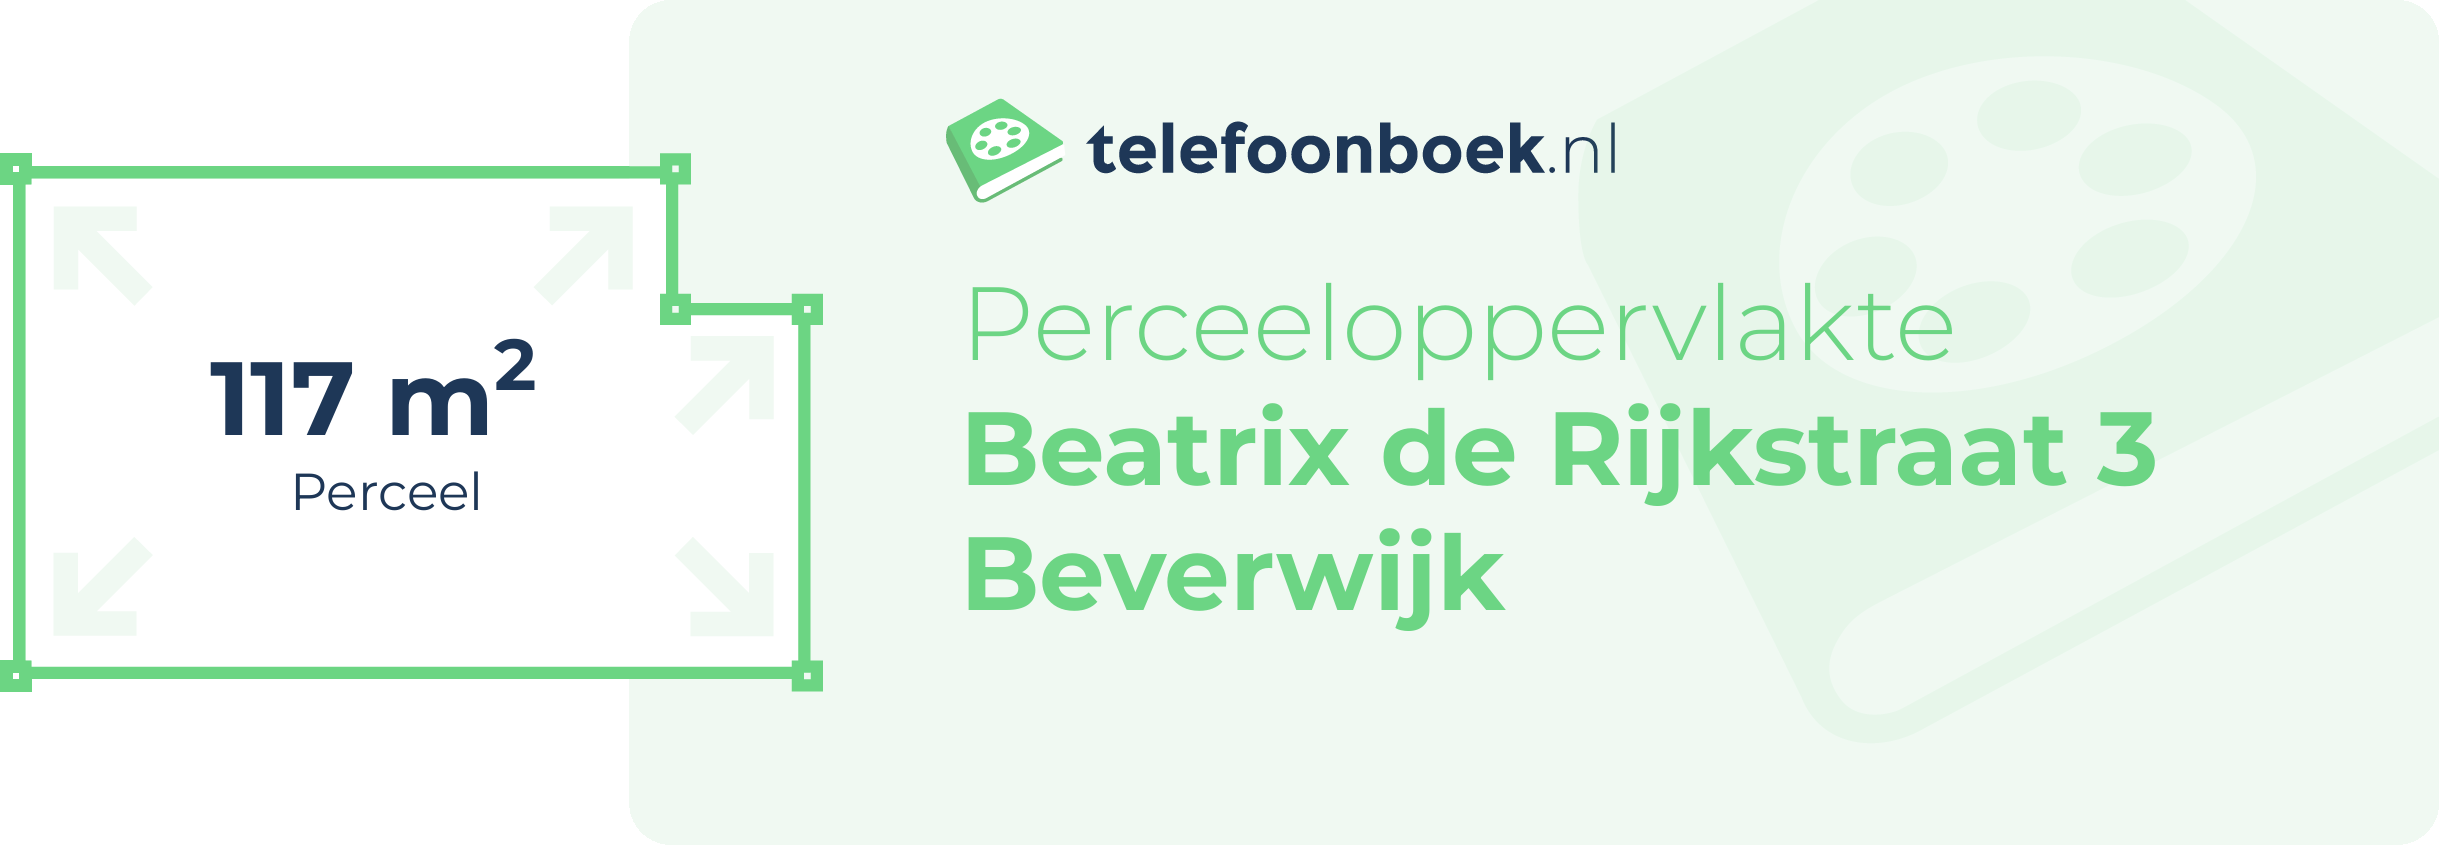 Perceeloppervlakte Beatrix De Rijkstraat 3 Beverwijk